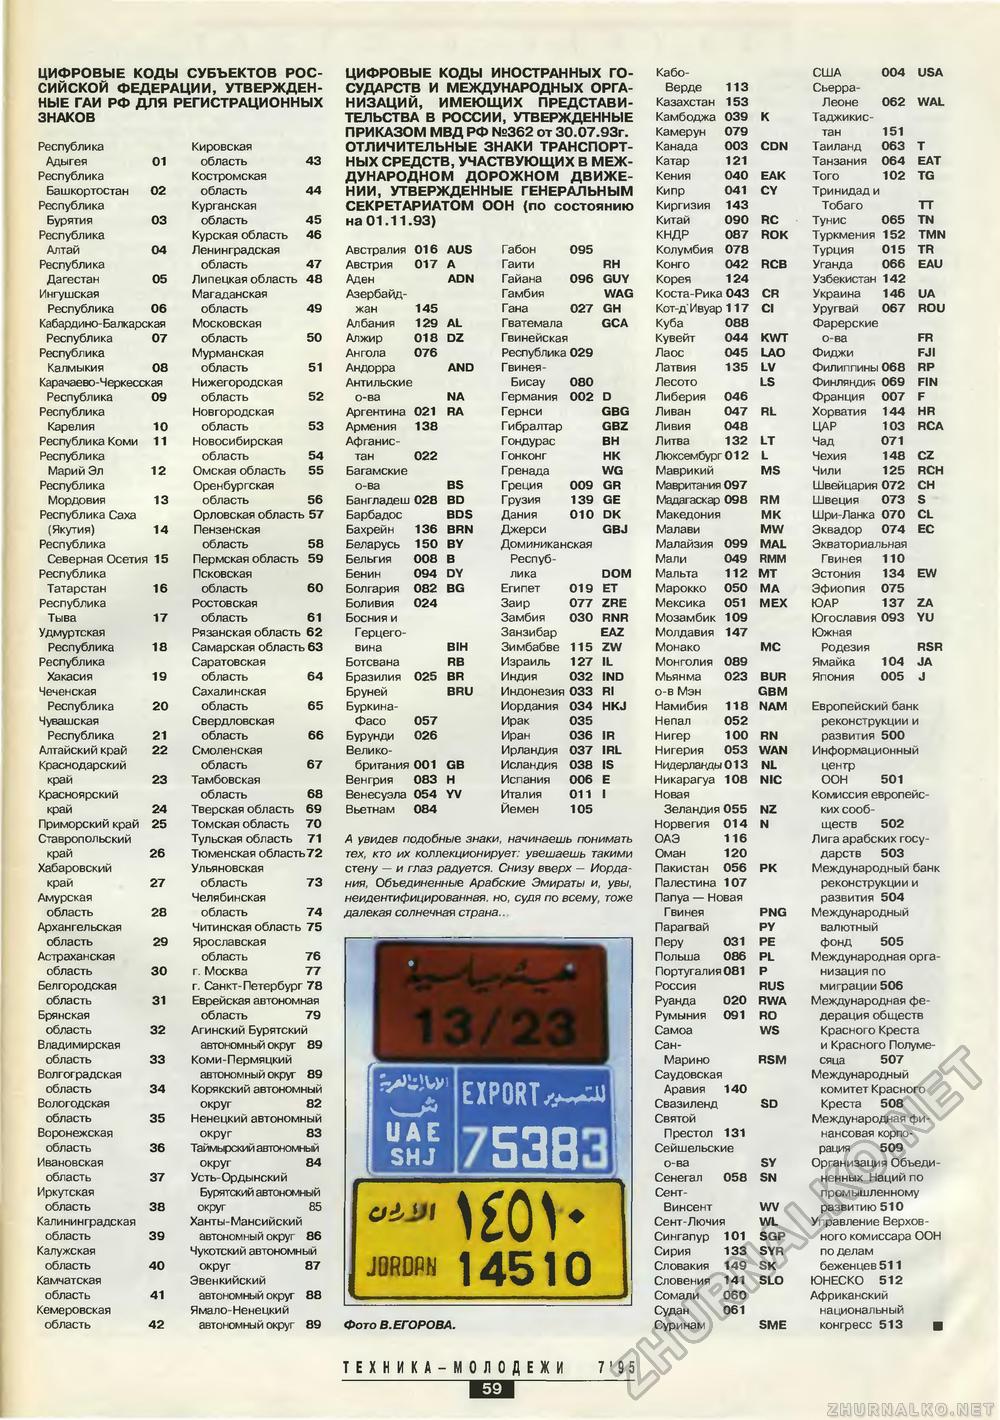  -  1995-07,  61